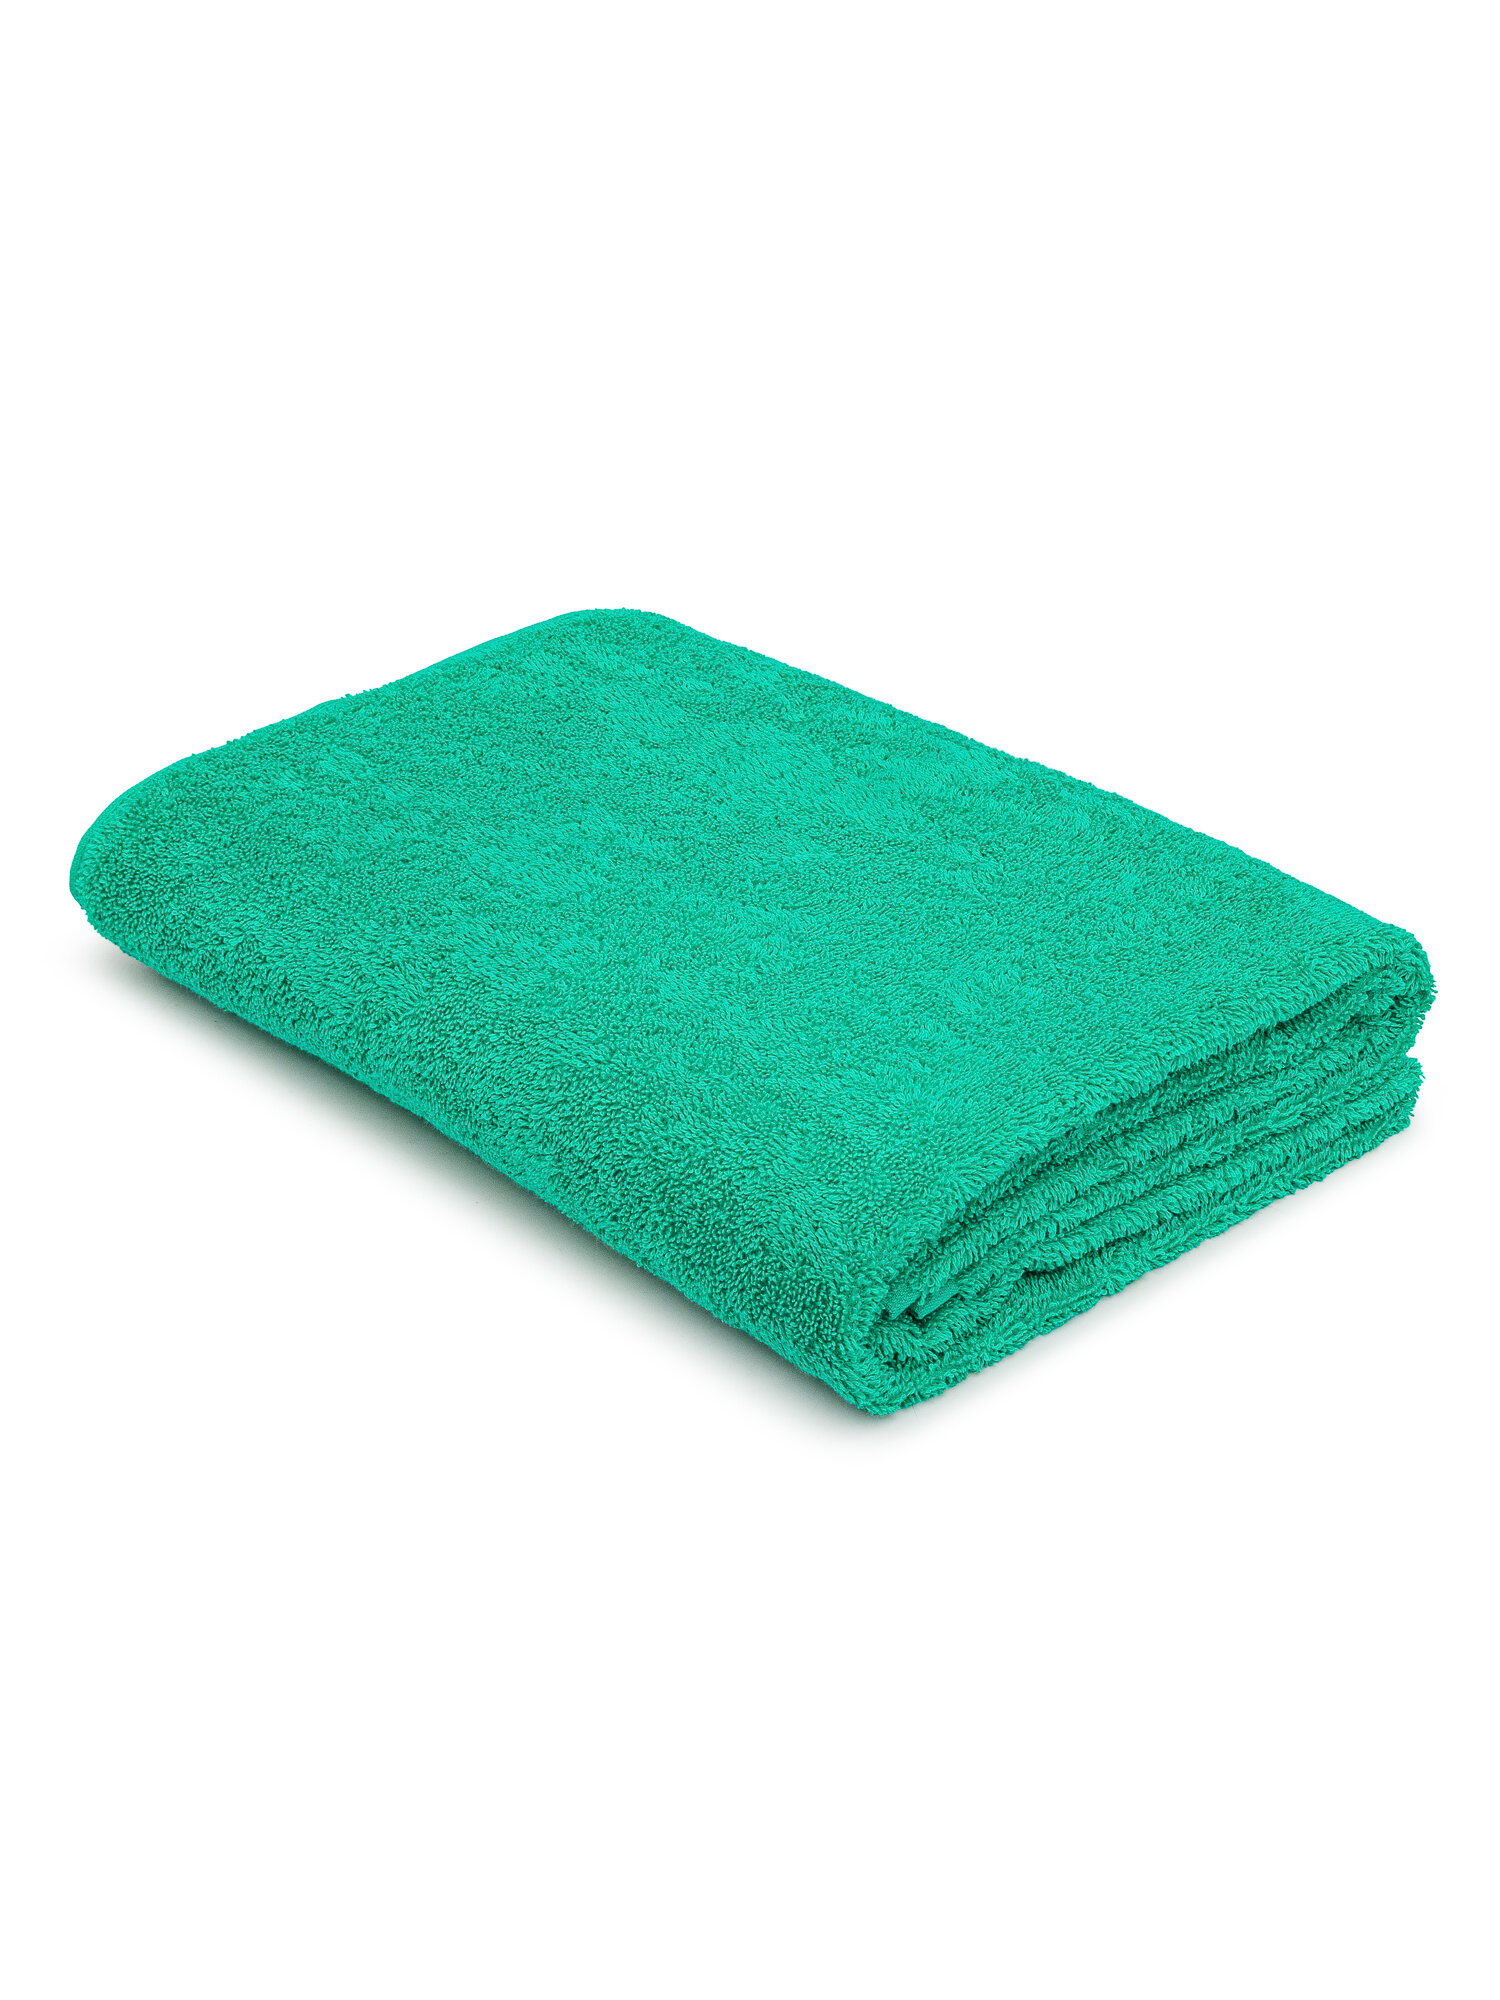 Махровое полотенце 70х140 банное TCStyle зеленого цвета 1 шт. 470 гр/м2